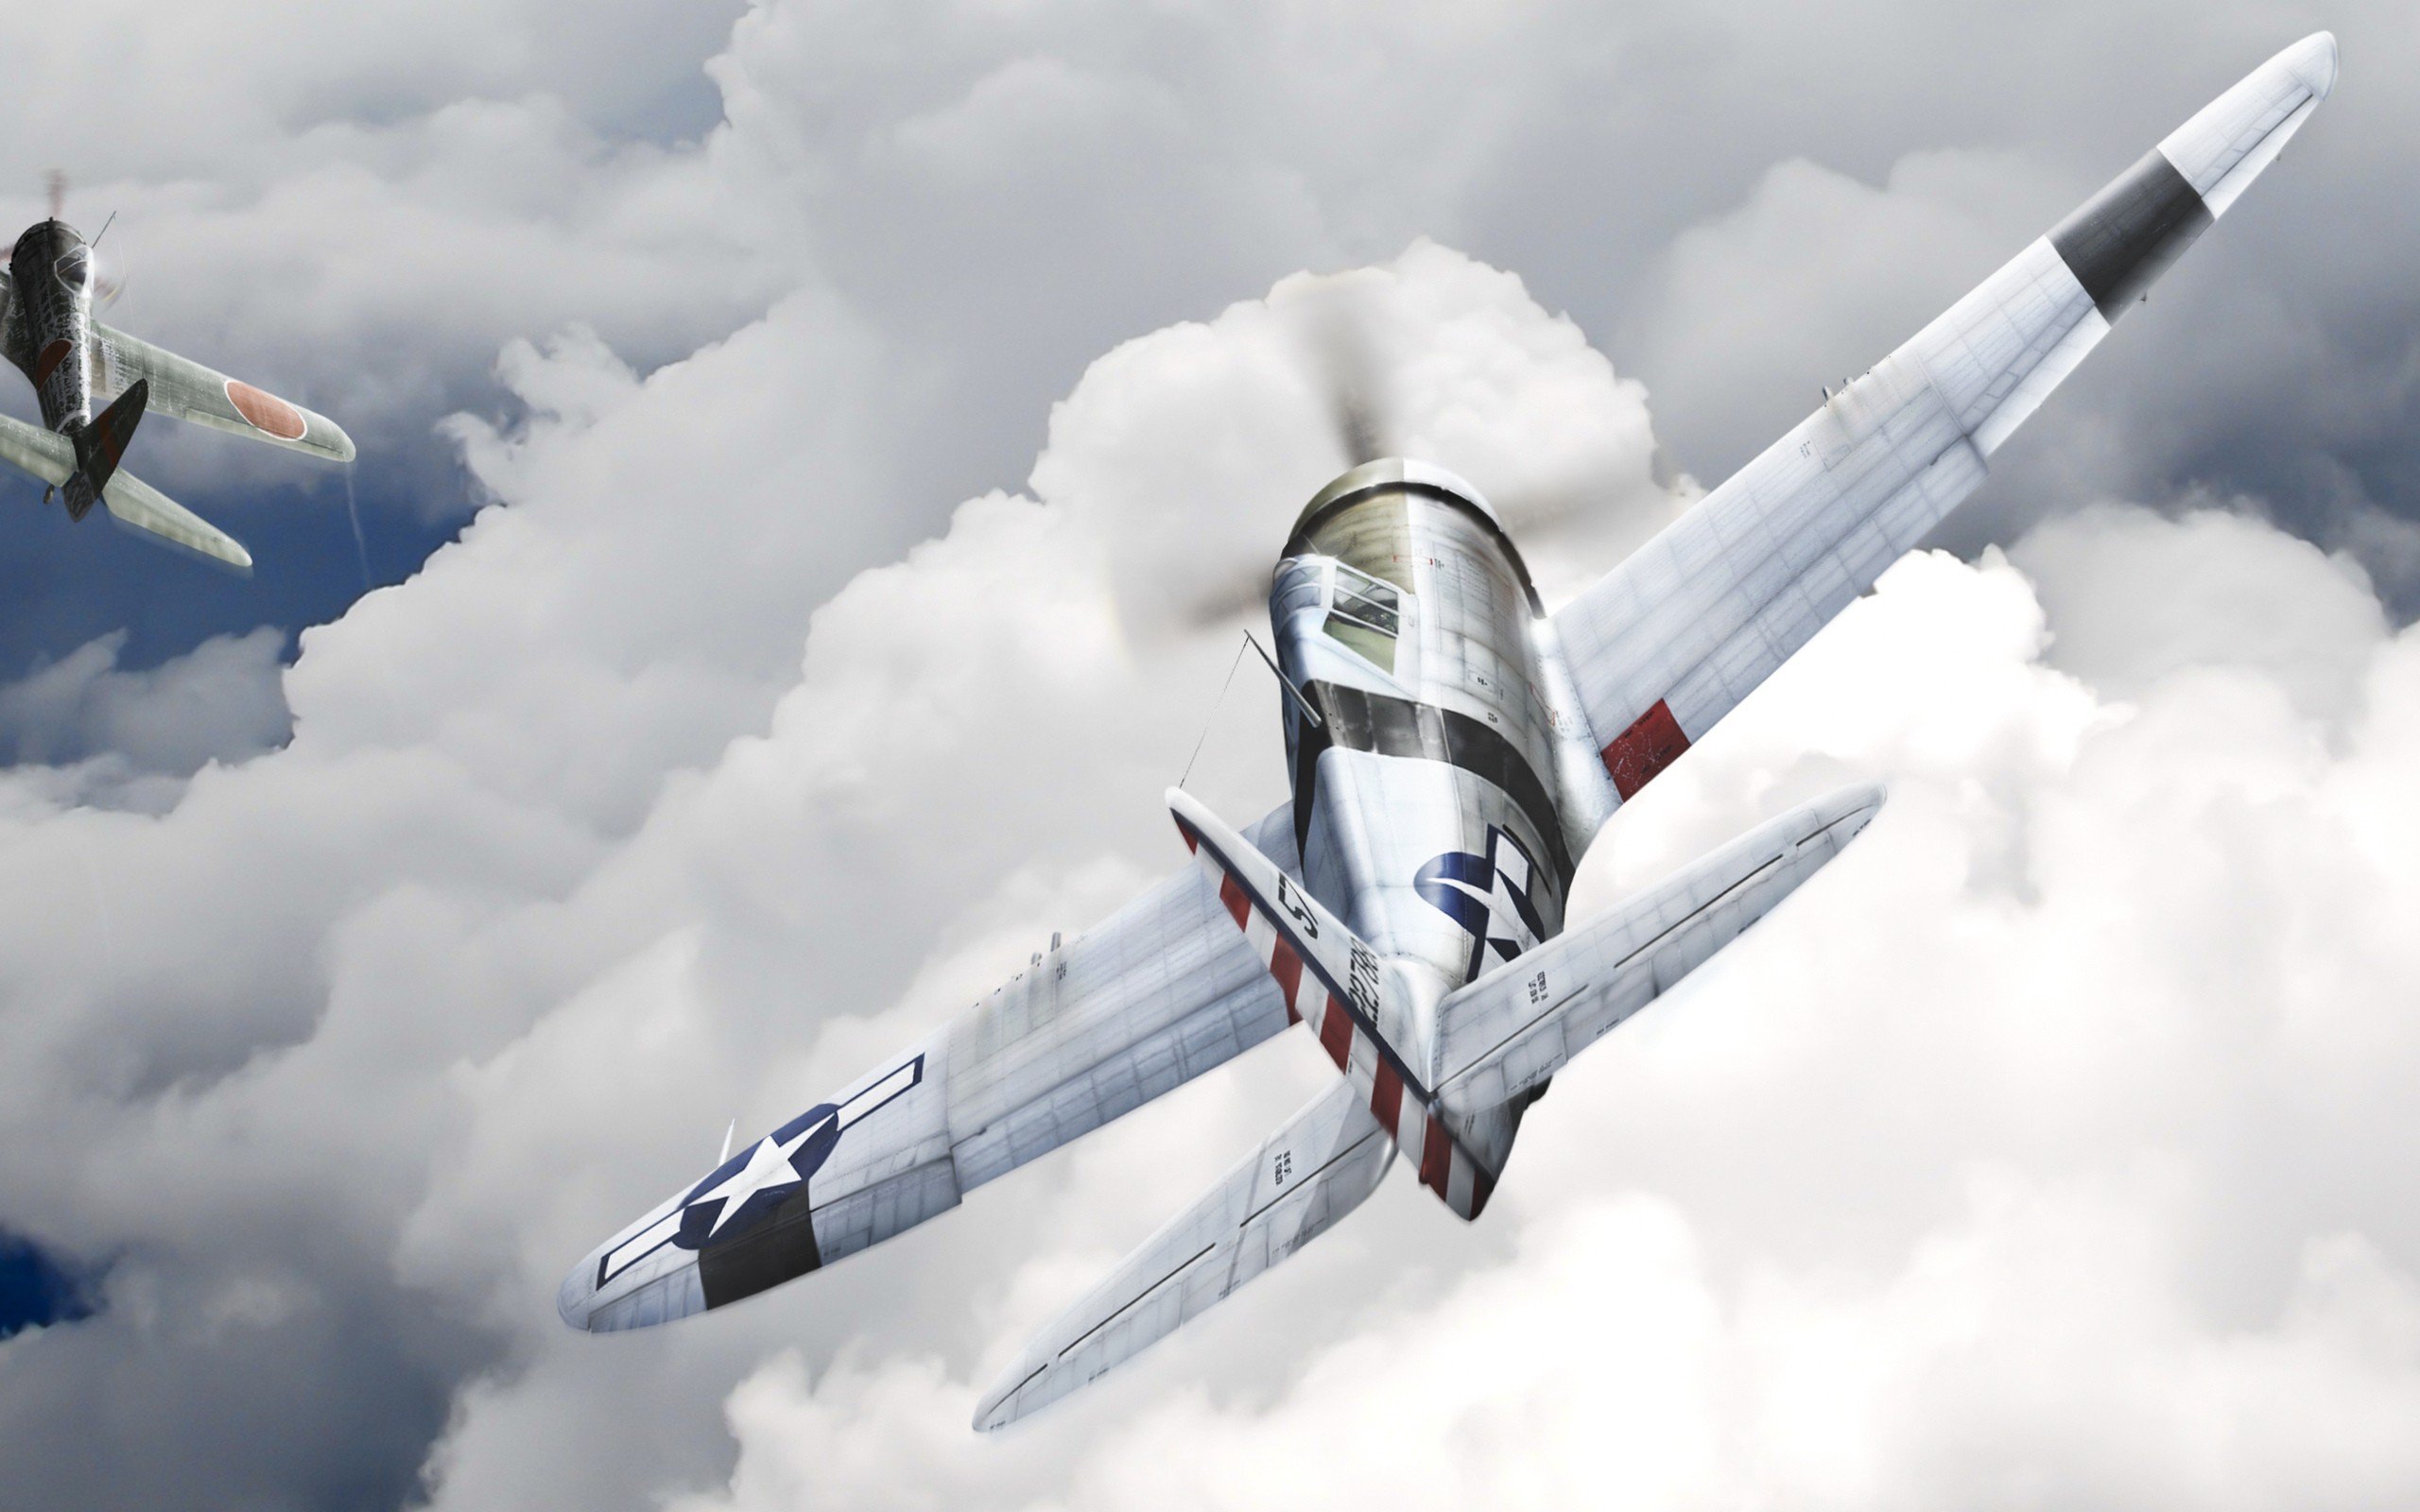 Aircraft P-51 Mustang wallpaper | 2560x1600 | 233631 | WallpaperUP